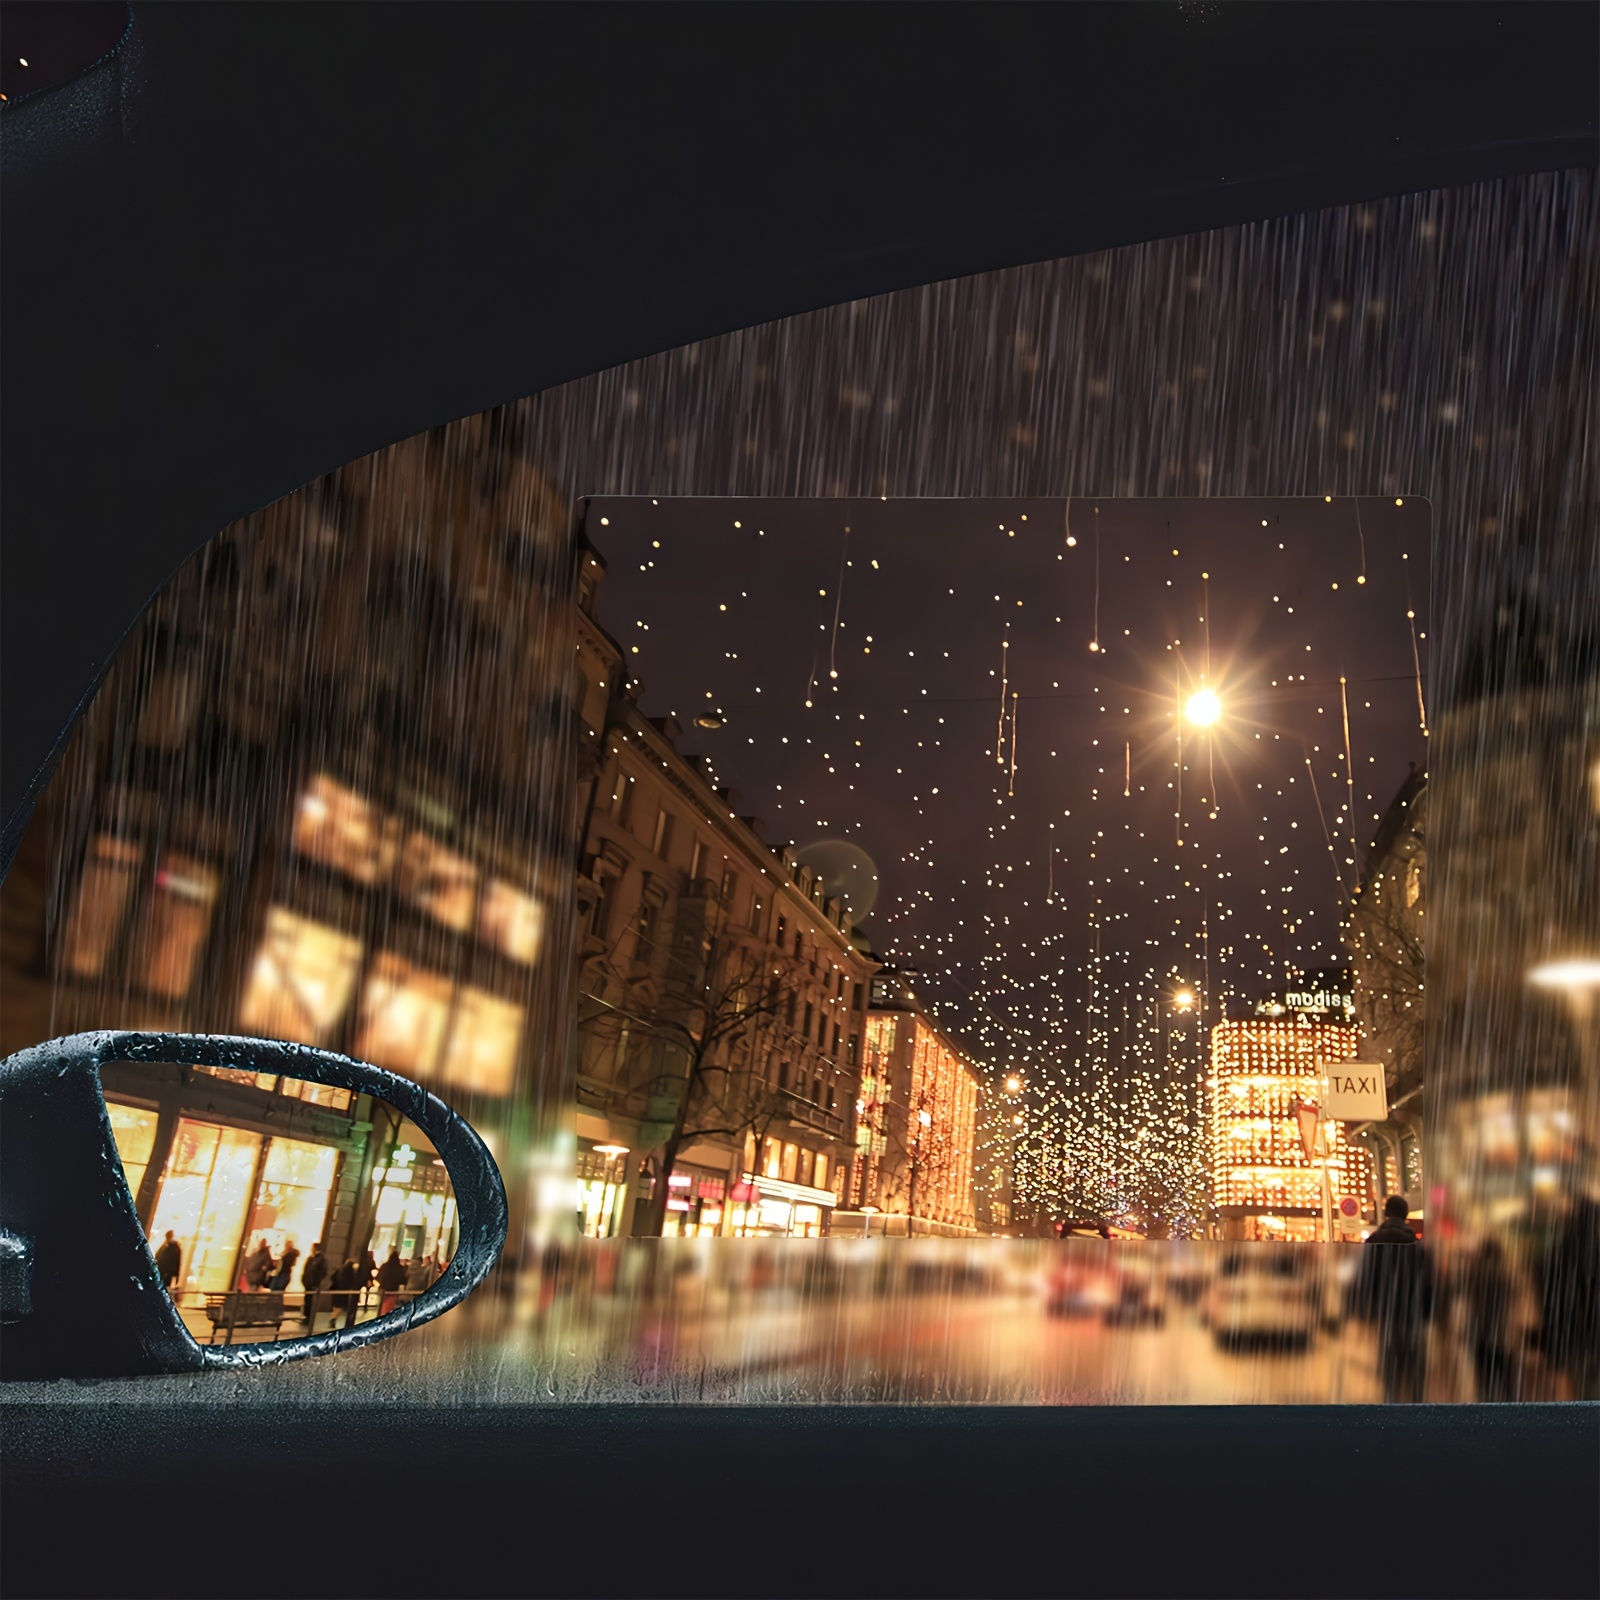 2pcs Auto rückspiegel Wasserdichte Regenfeste Spiegelfolie - Temu